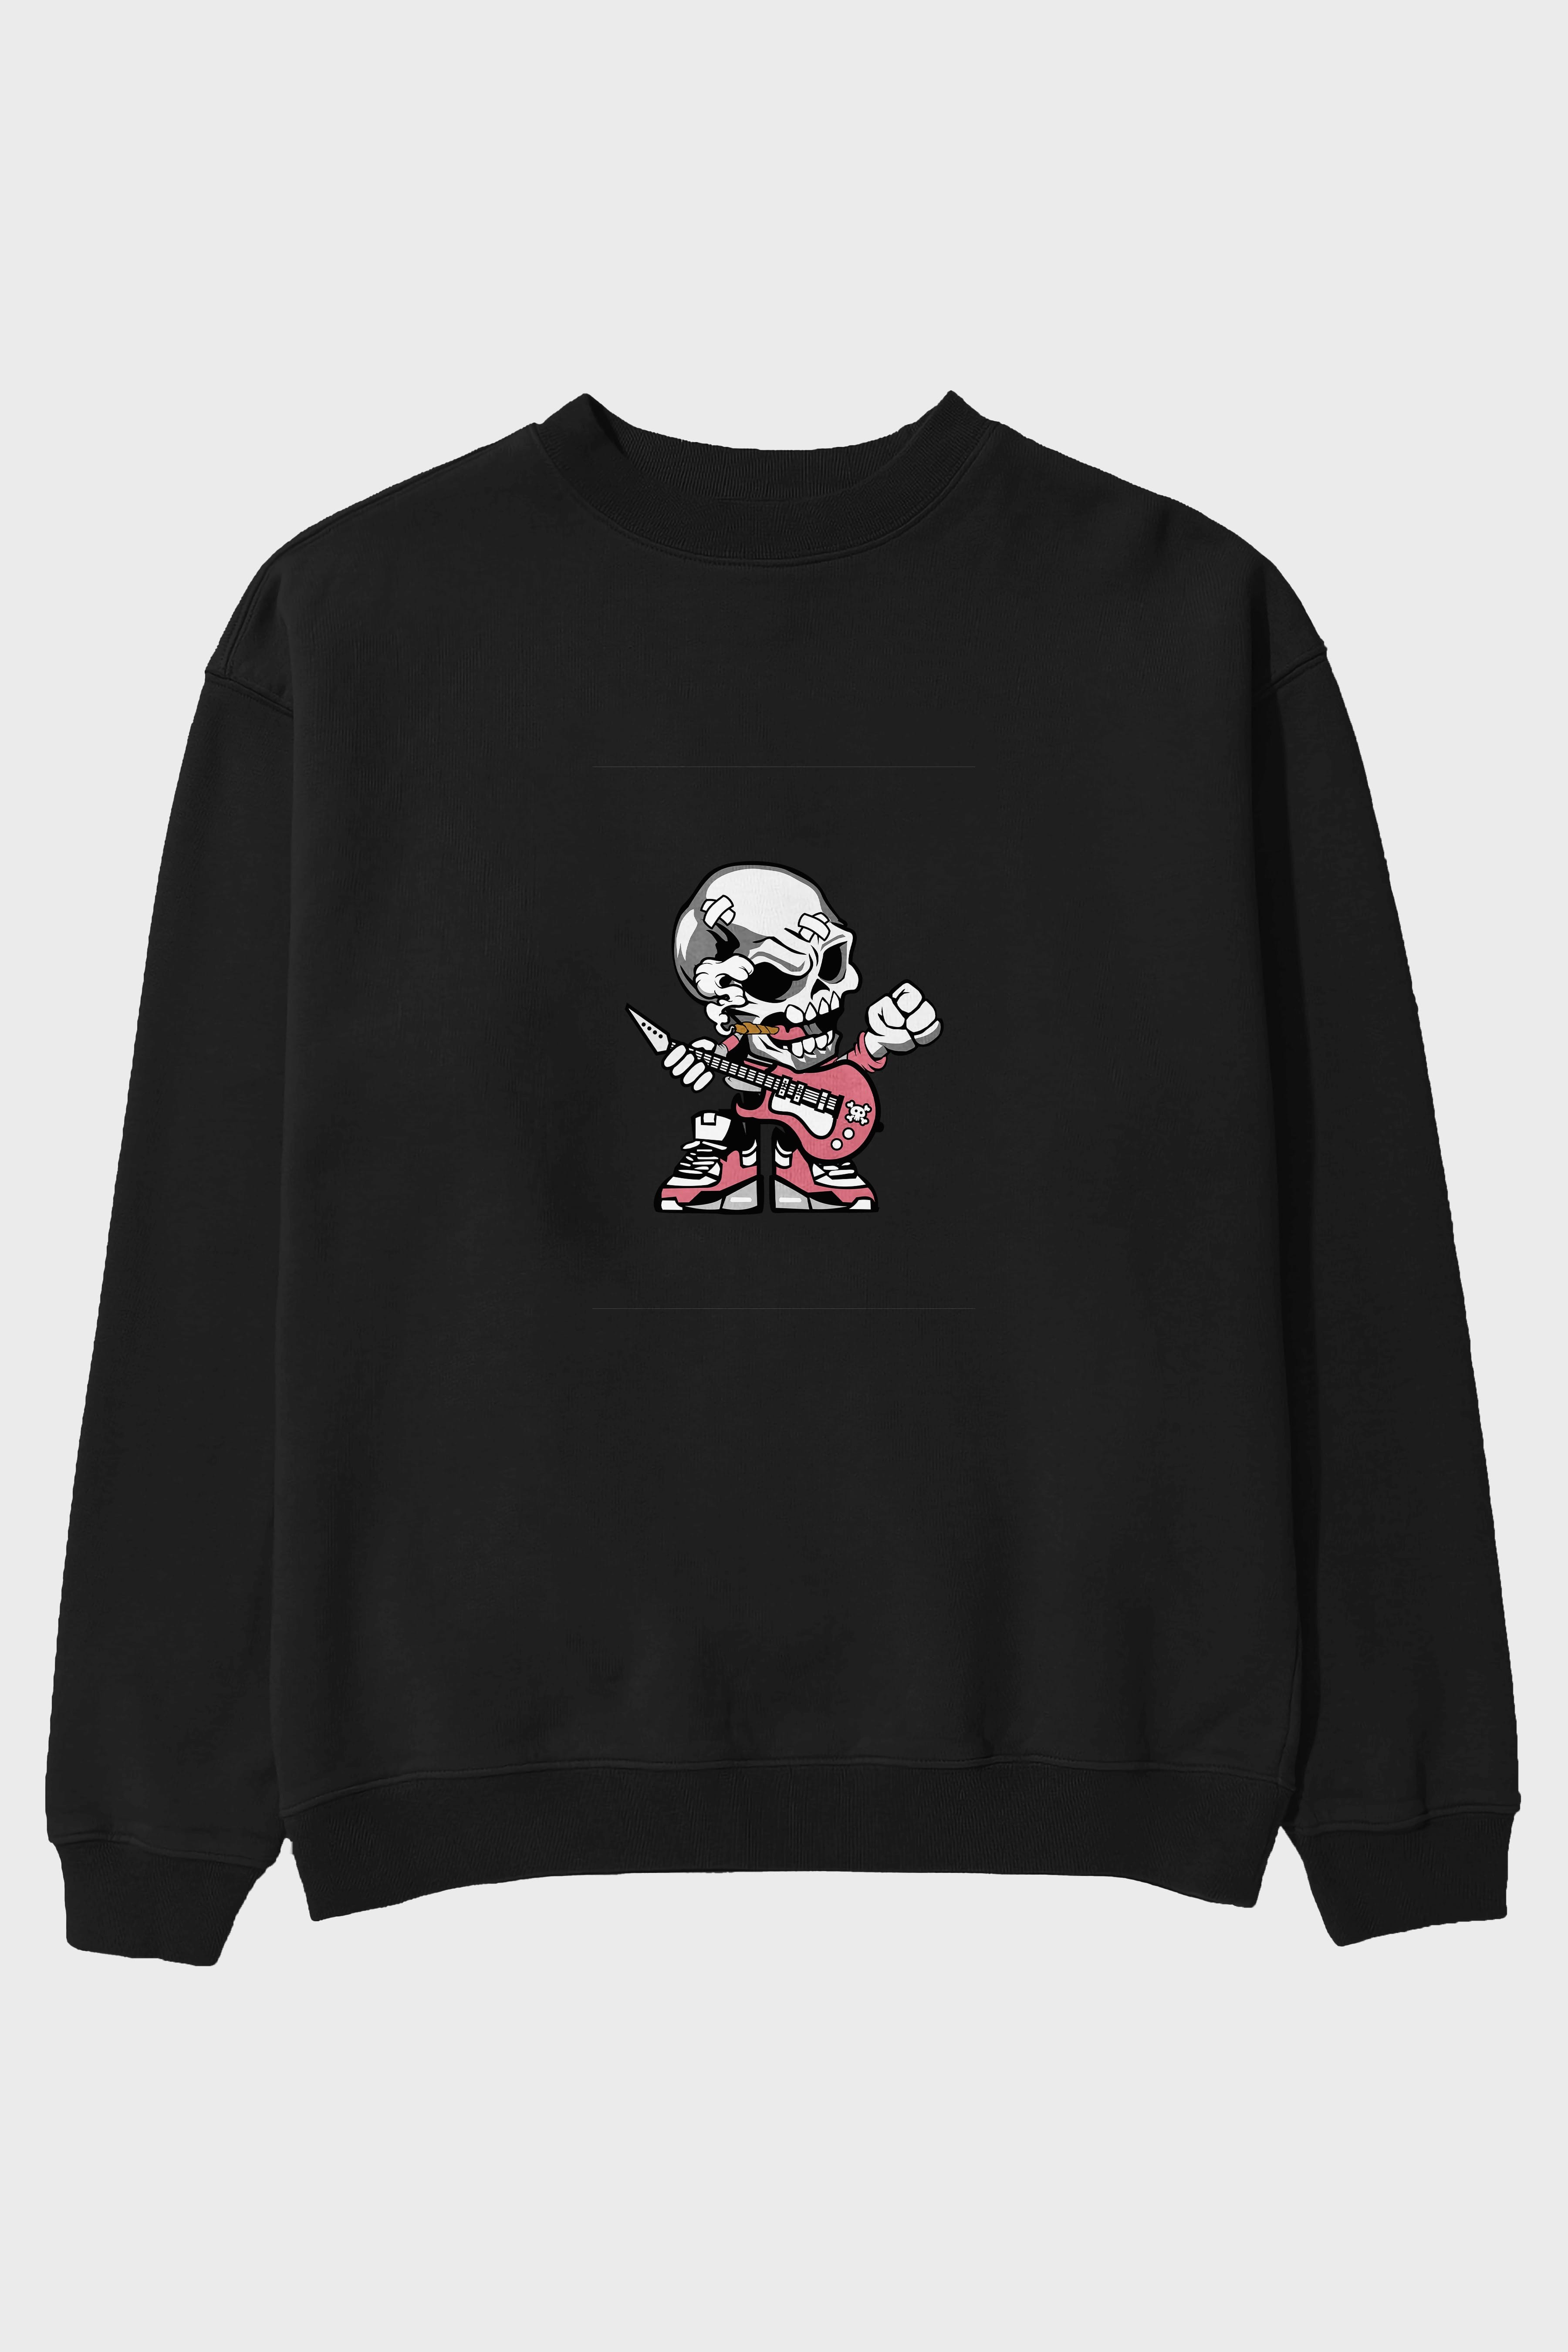 Skull Rockstar Ön Baskılı Oversize Sweatshirt Erkek Kadın Unisex